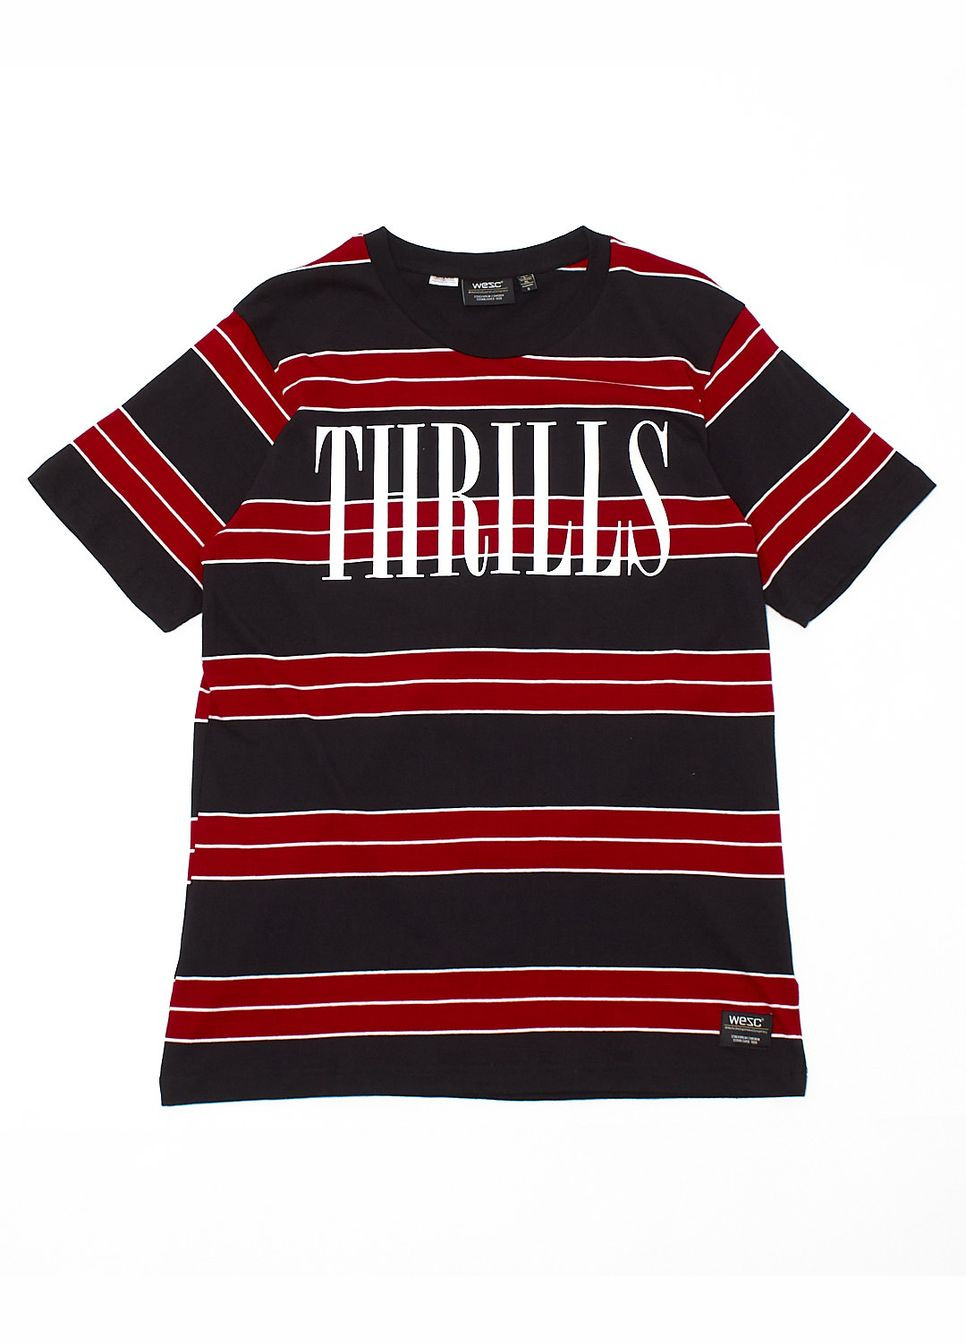 Комбинированная футболка basic,черный-красный-белый, Wesc